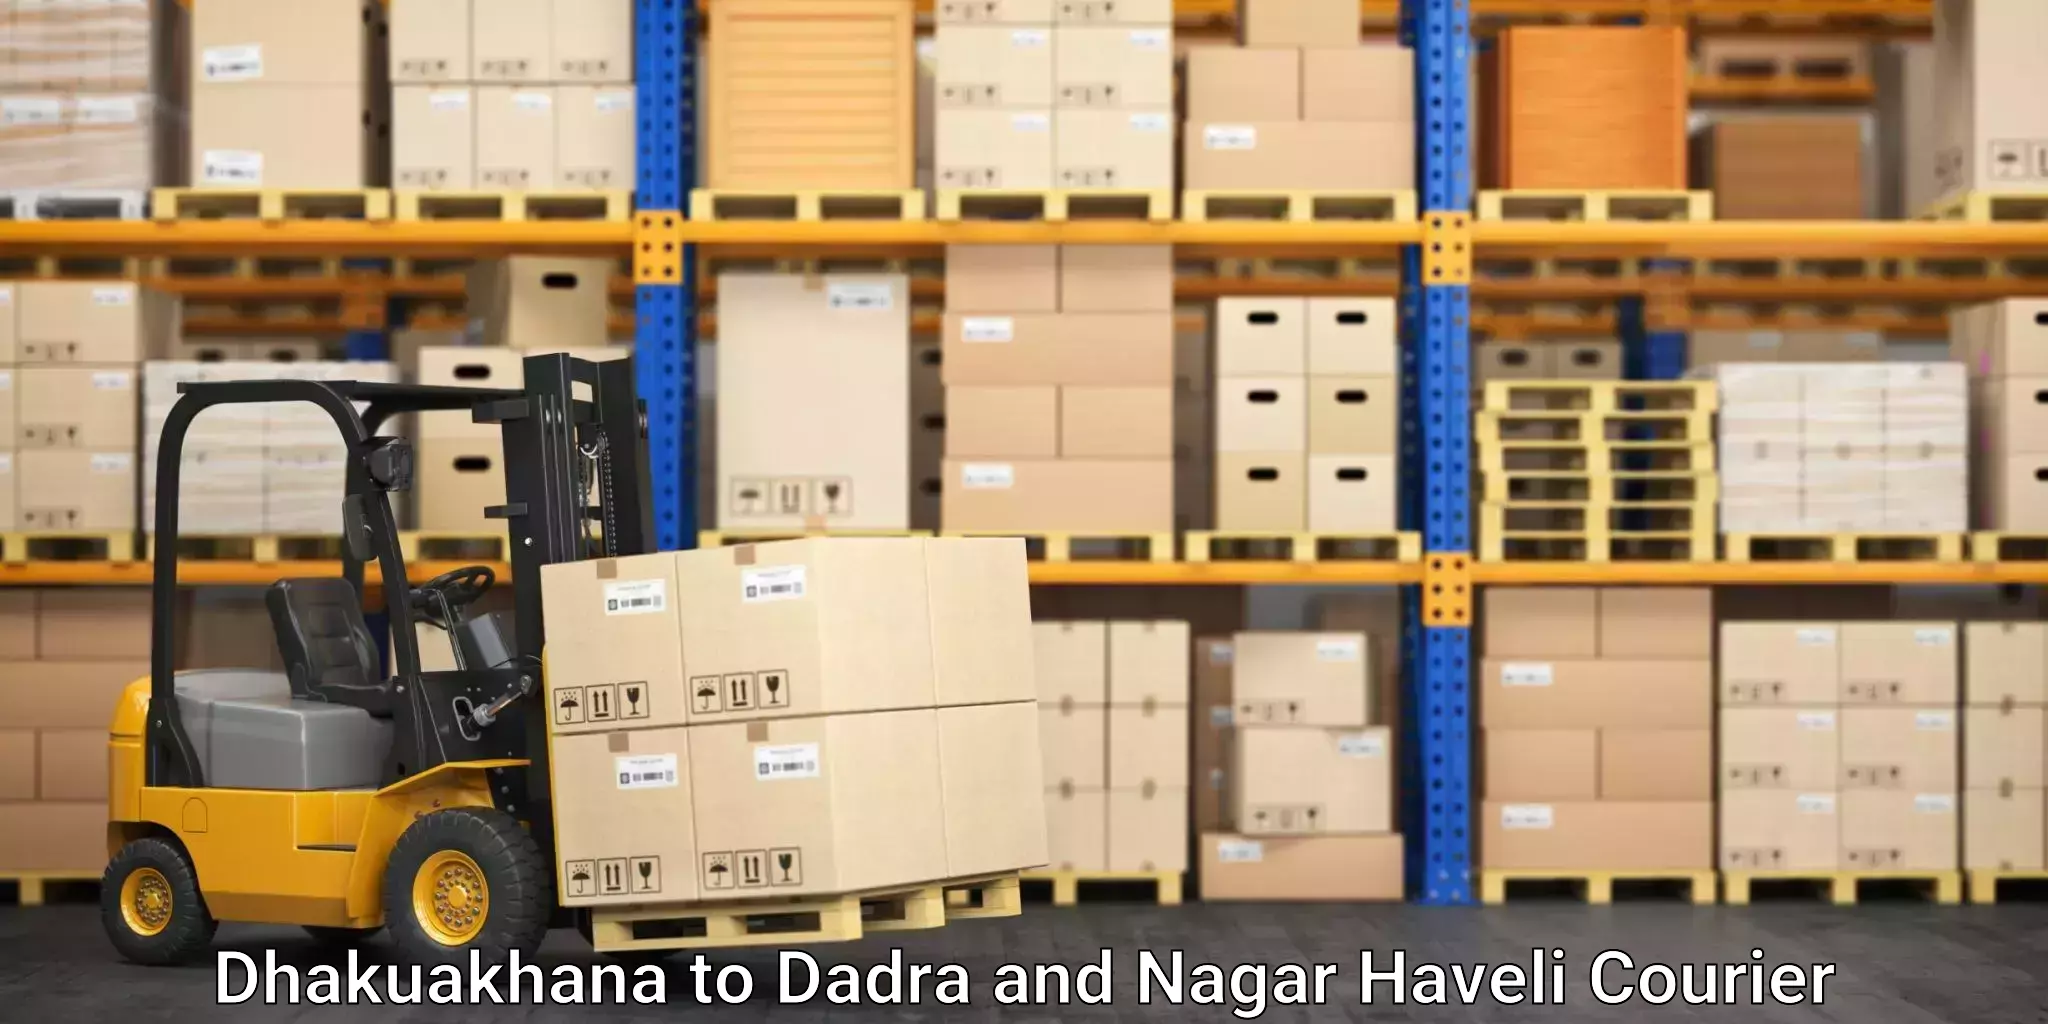 Rapid freight solutions Dhakuakhana to Dadra and Nagar Haveli